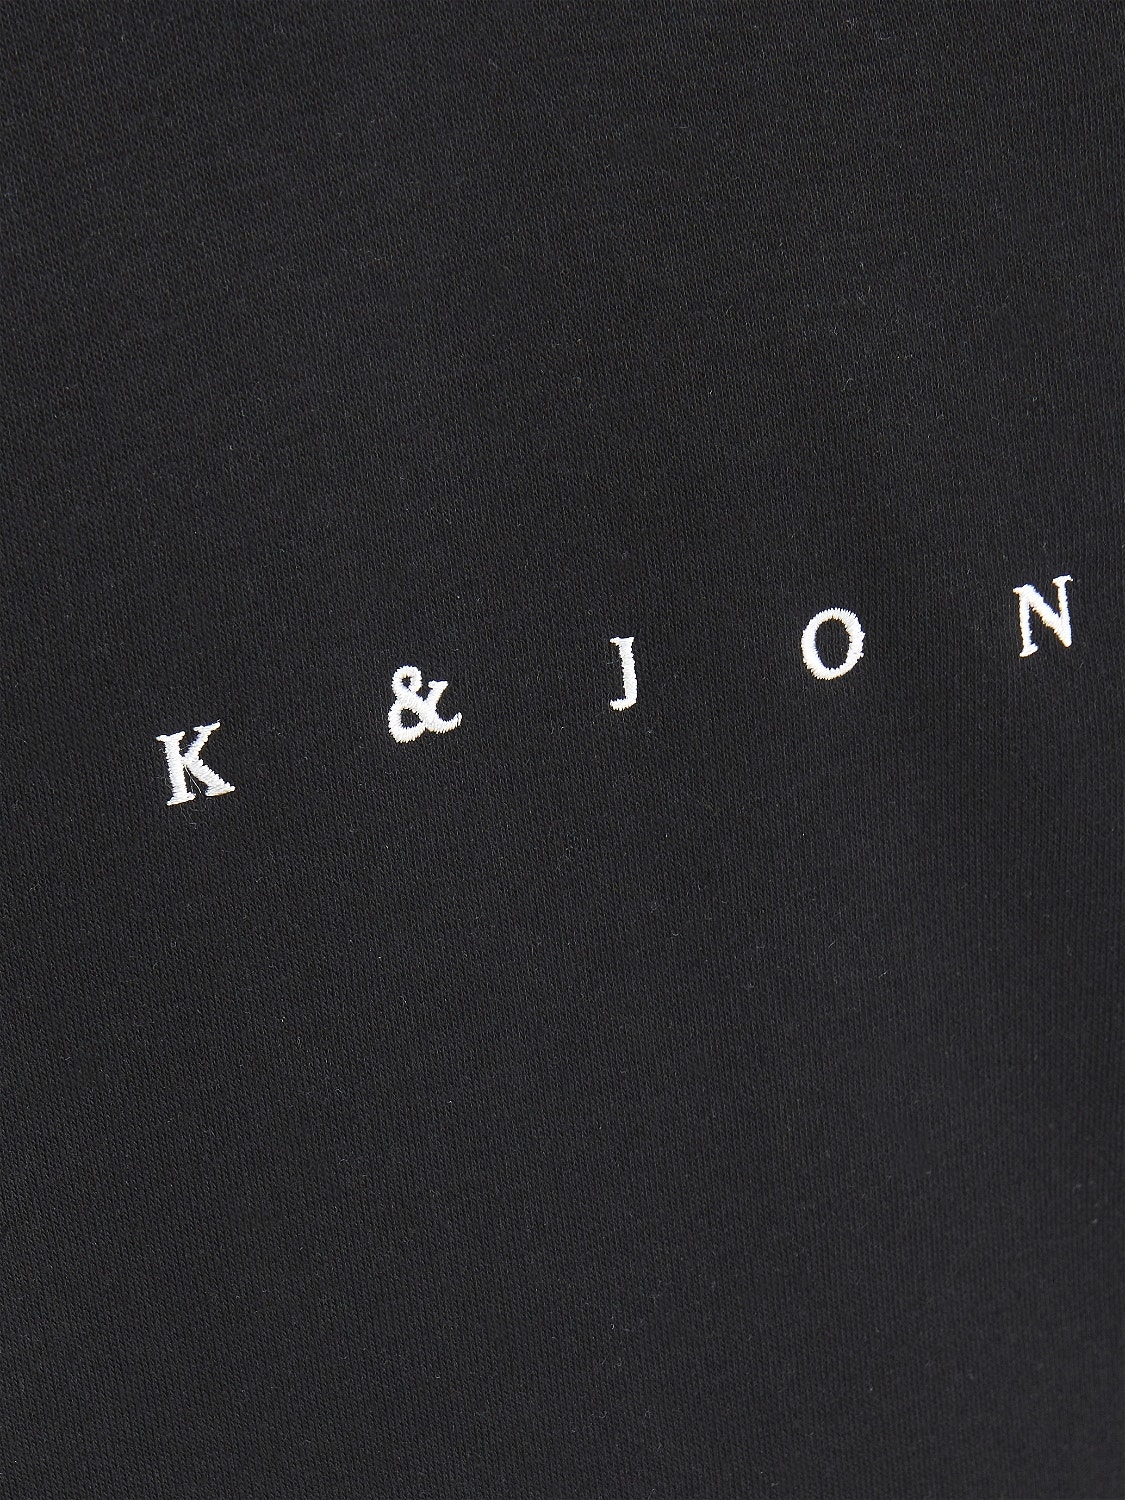 Jack & Jones Logo Kapuzenpullover Für jungs -Black - 12214983